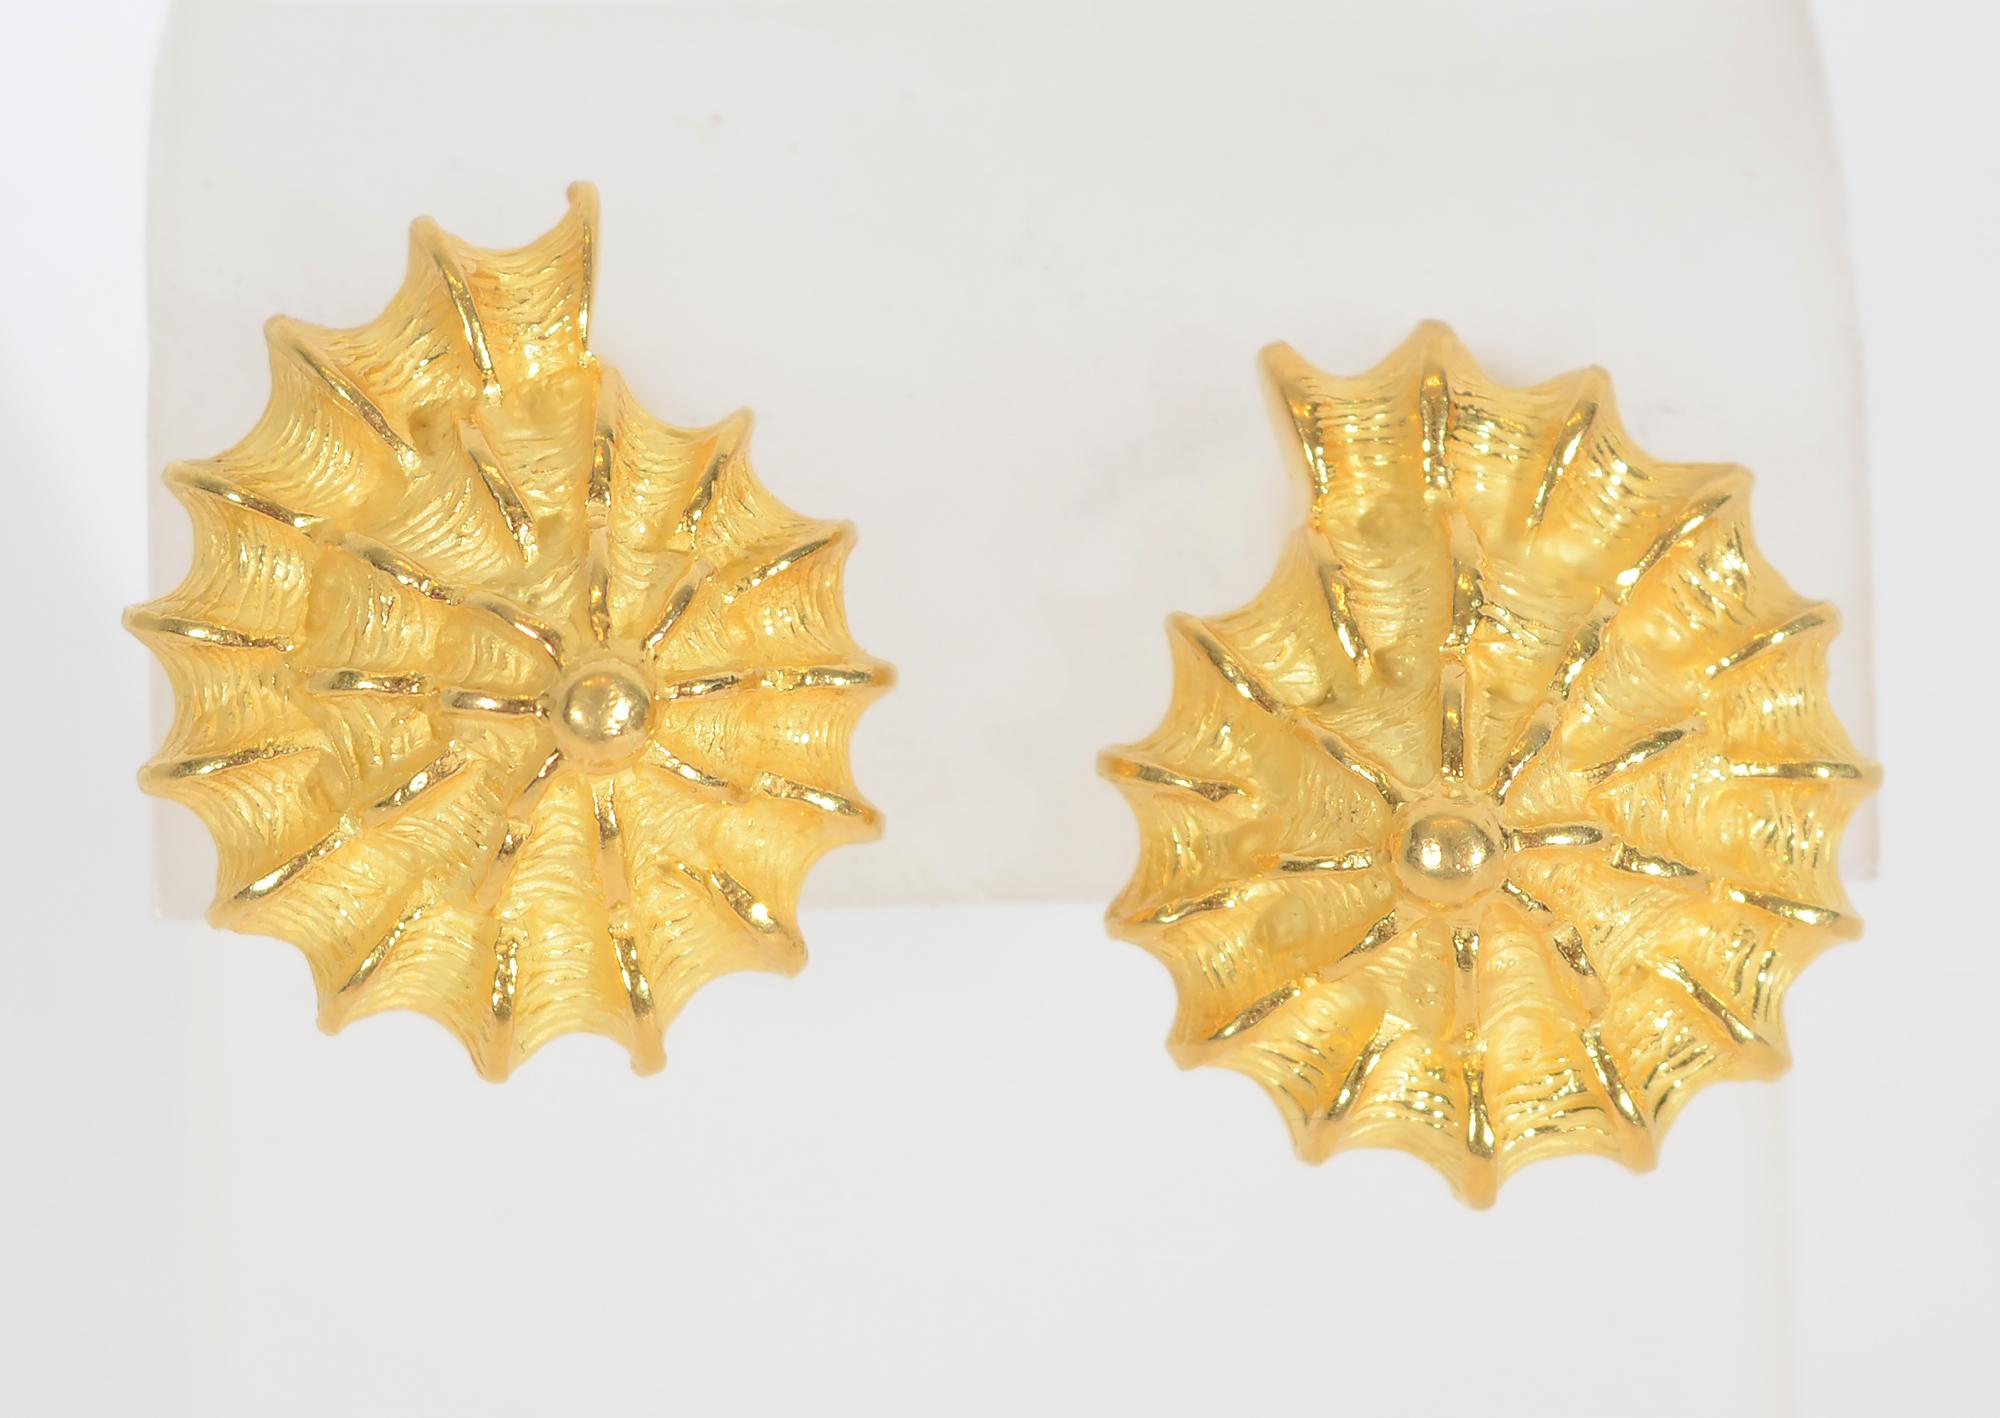 Wunderschön geformte und strukturierte Muschelohrringe von Valentin Magro. Sie sind aus 18-karätigem Gold und haben einen Stift- und einen Clipverschluss.
Sie werden immer noch produziert und von Magro für 5035 $ verkauft.